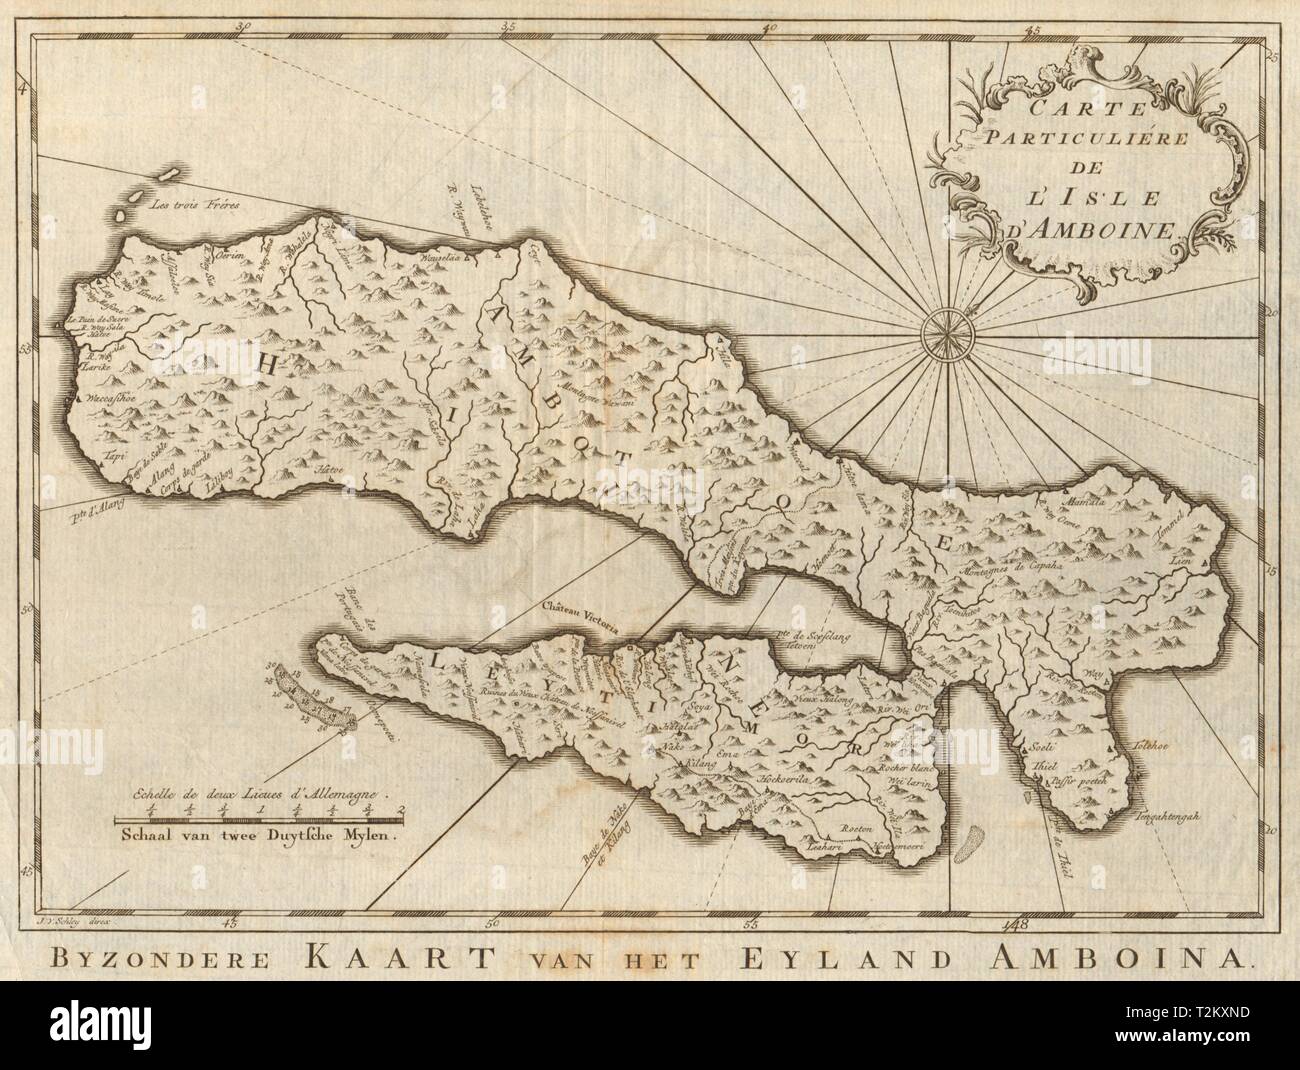 "Carte particulière de l'lsle d'Amboine'. Ambon, Moluques. BELLIN/SCHLEY 1755 map Banque D'Images